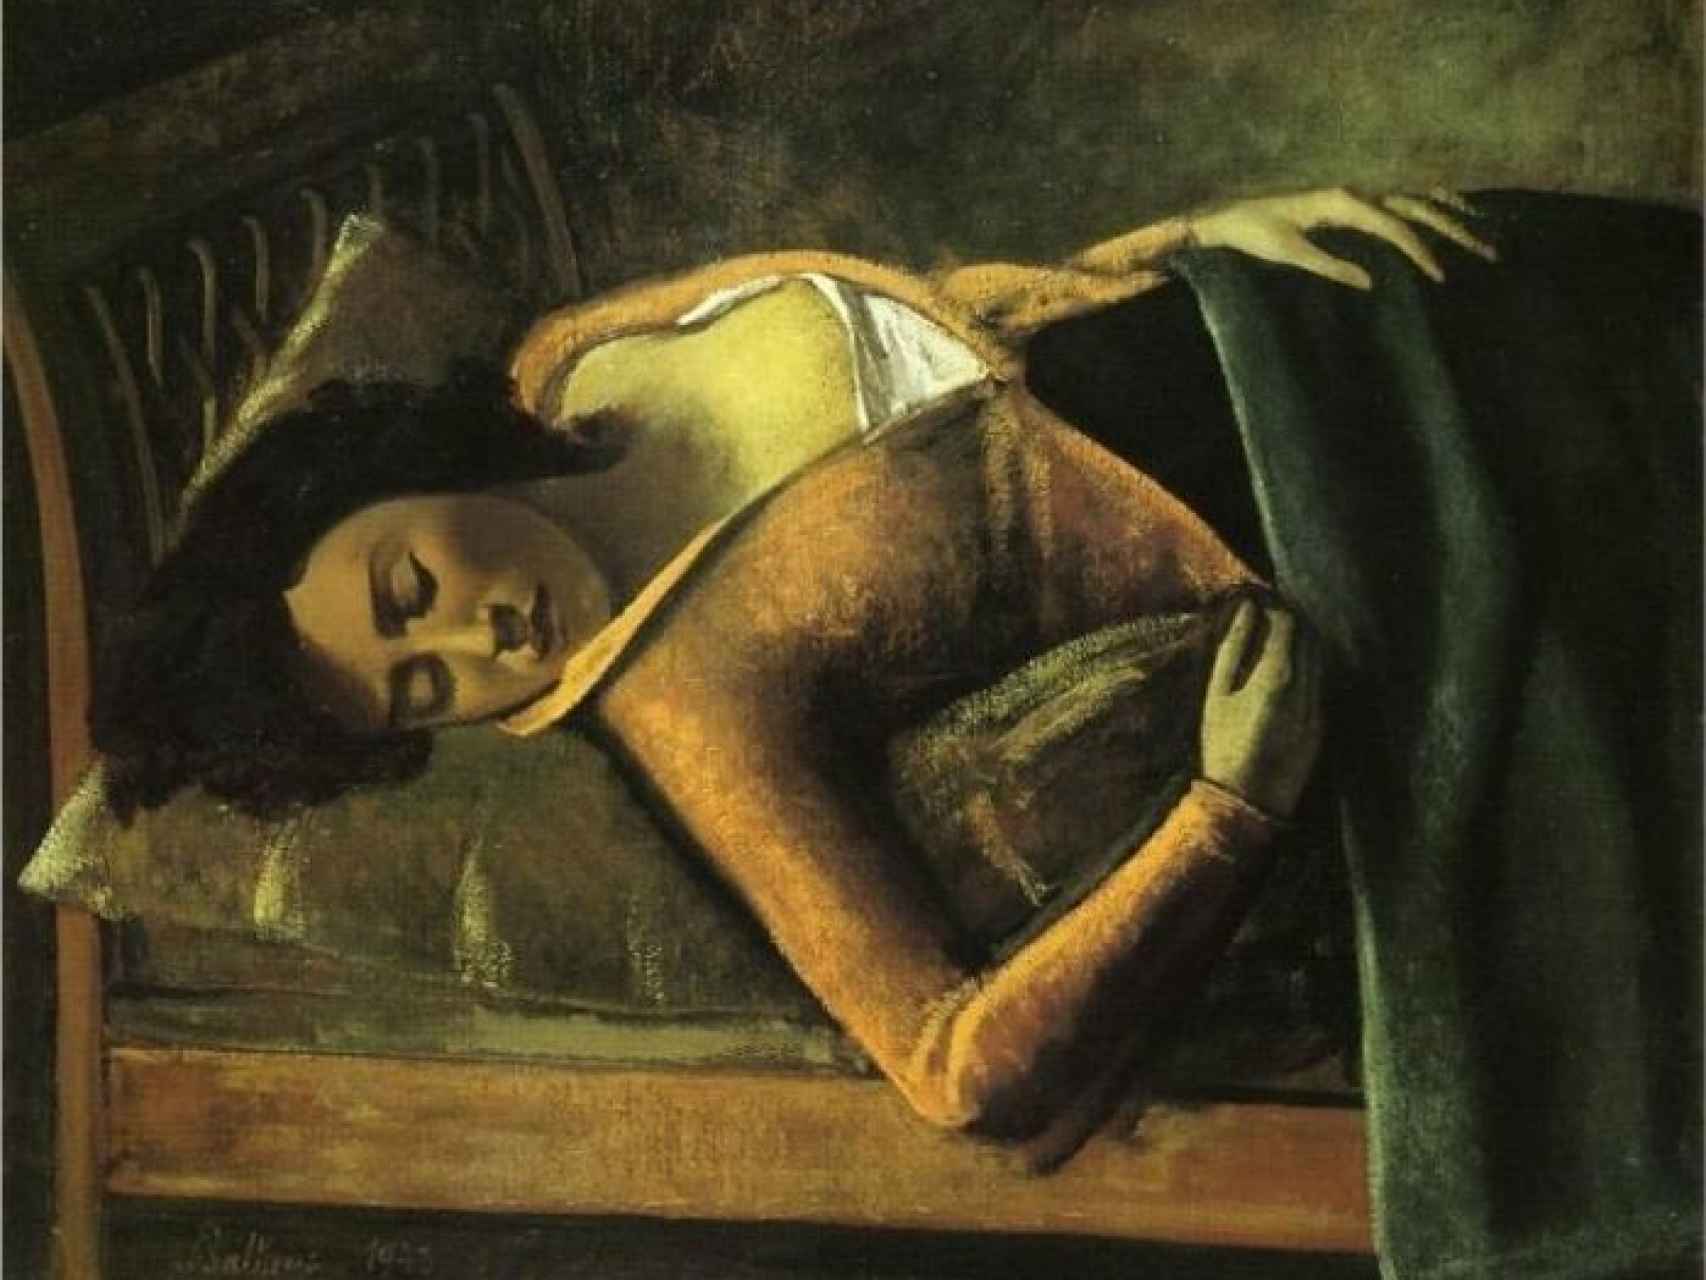 Muchacha dormida (1943), de Balthus.